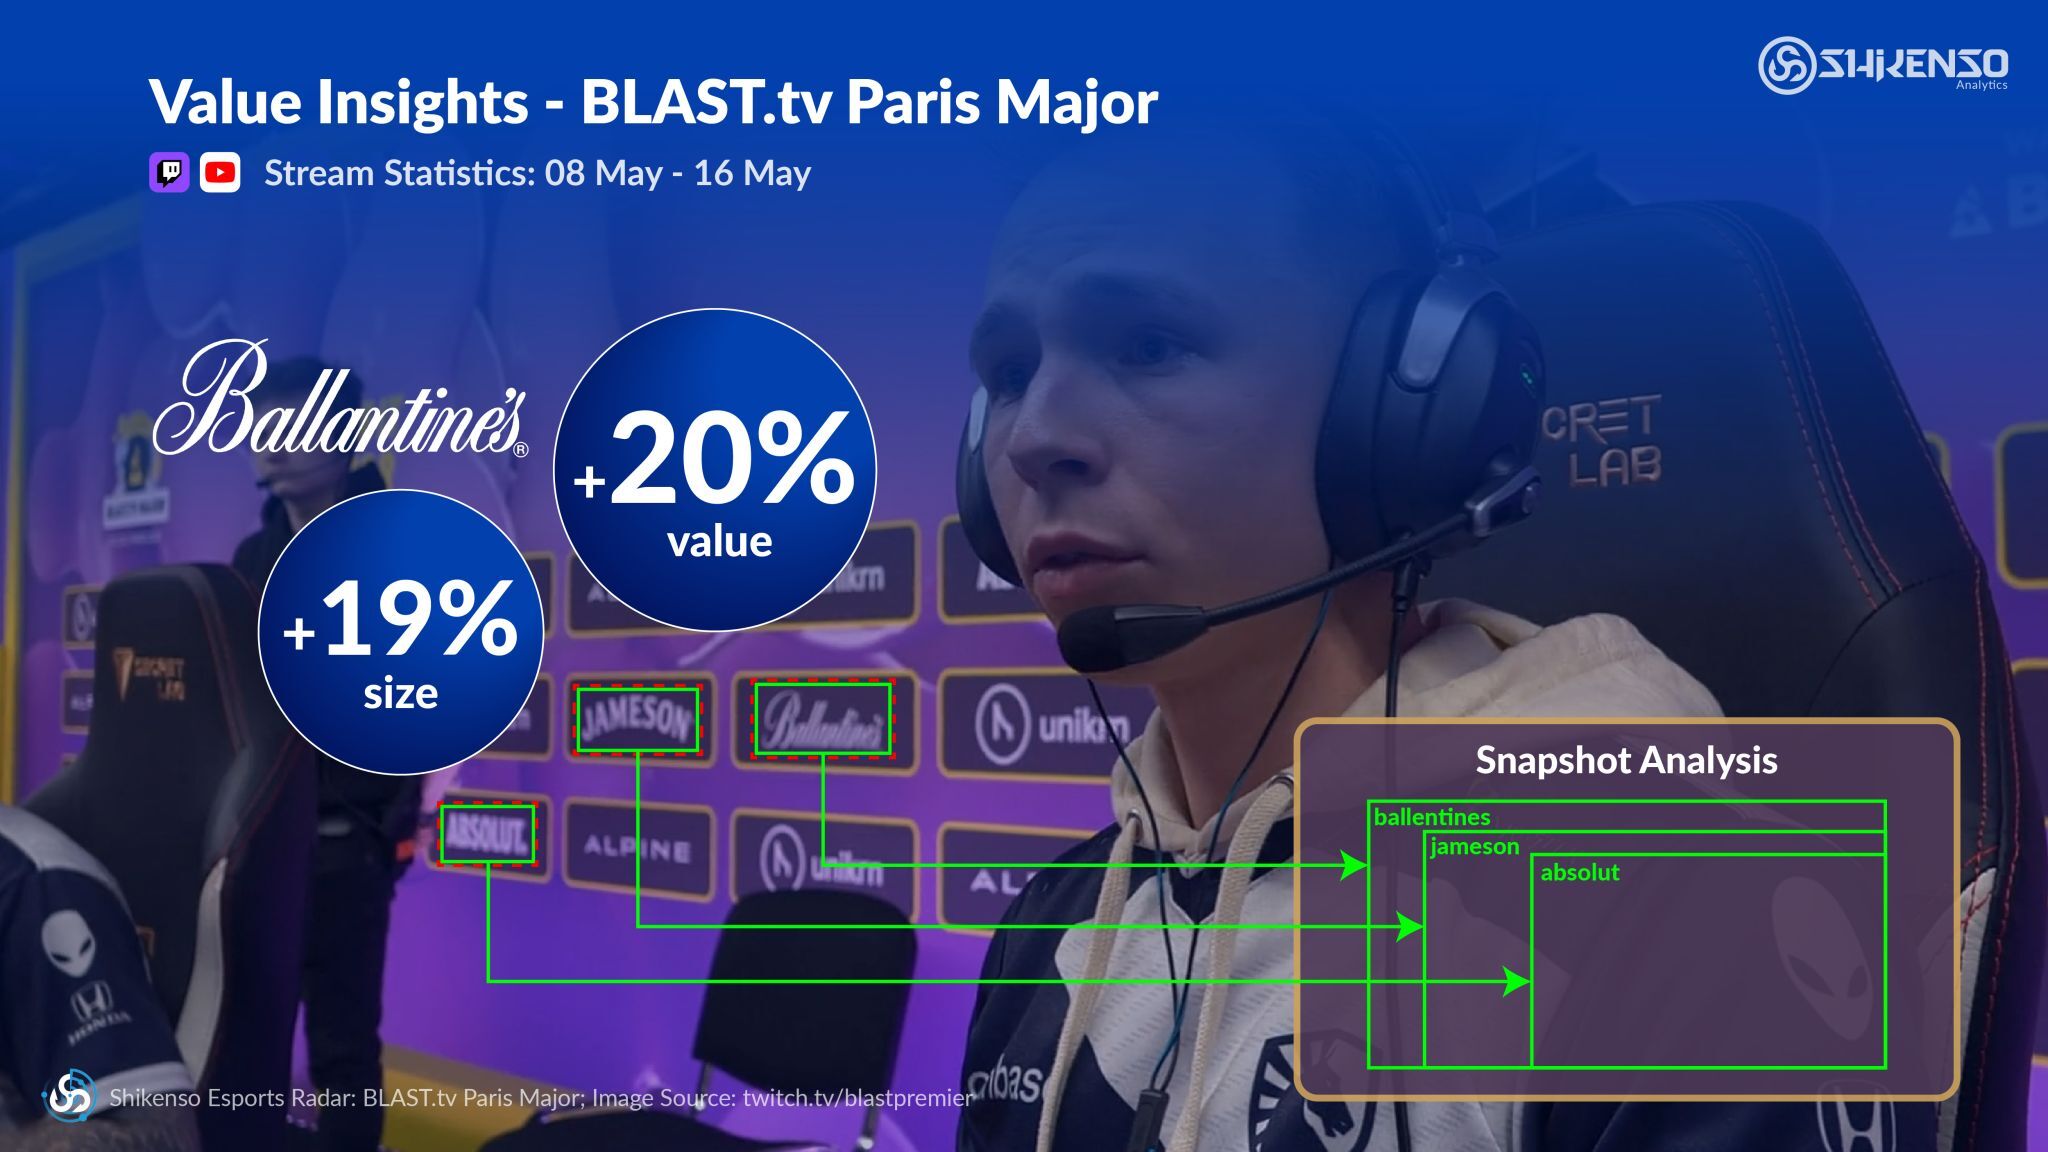 Shikenso Analytics: Media Value of Liquor Brands at the BLAST.tv Paris Major 2023